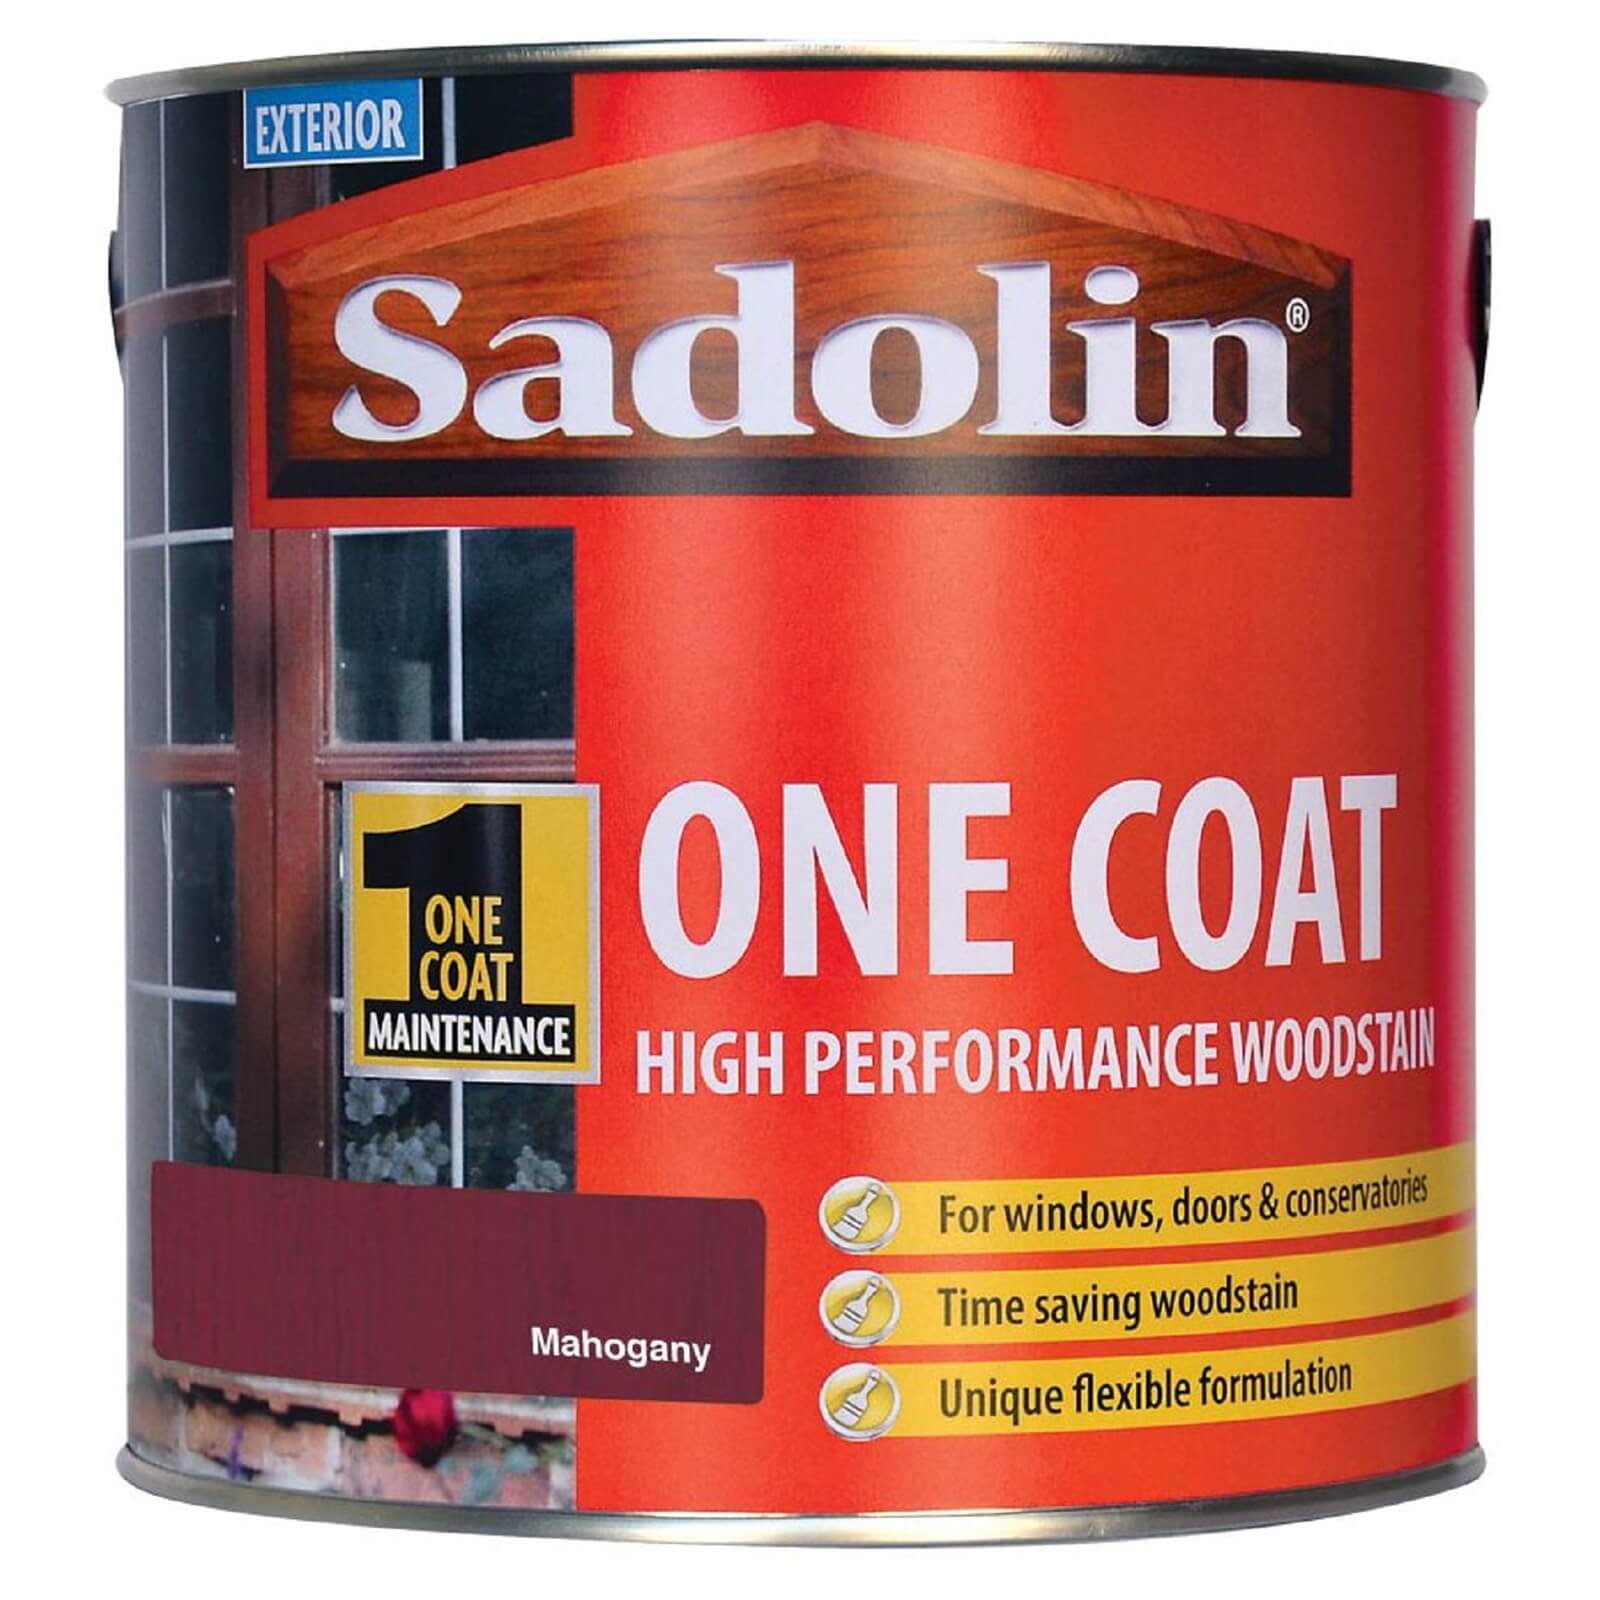 Sadolin Advanced One Coat Woodstain - Mahogany - 2.5L